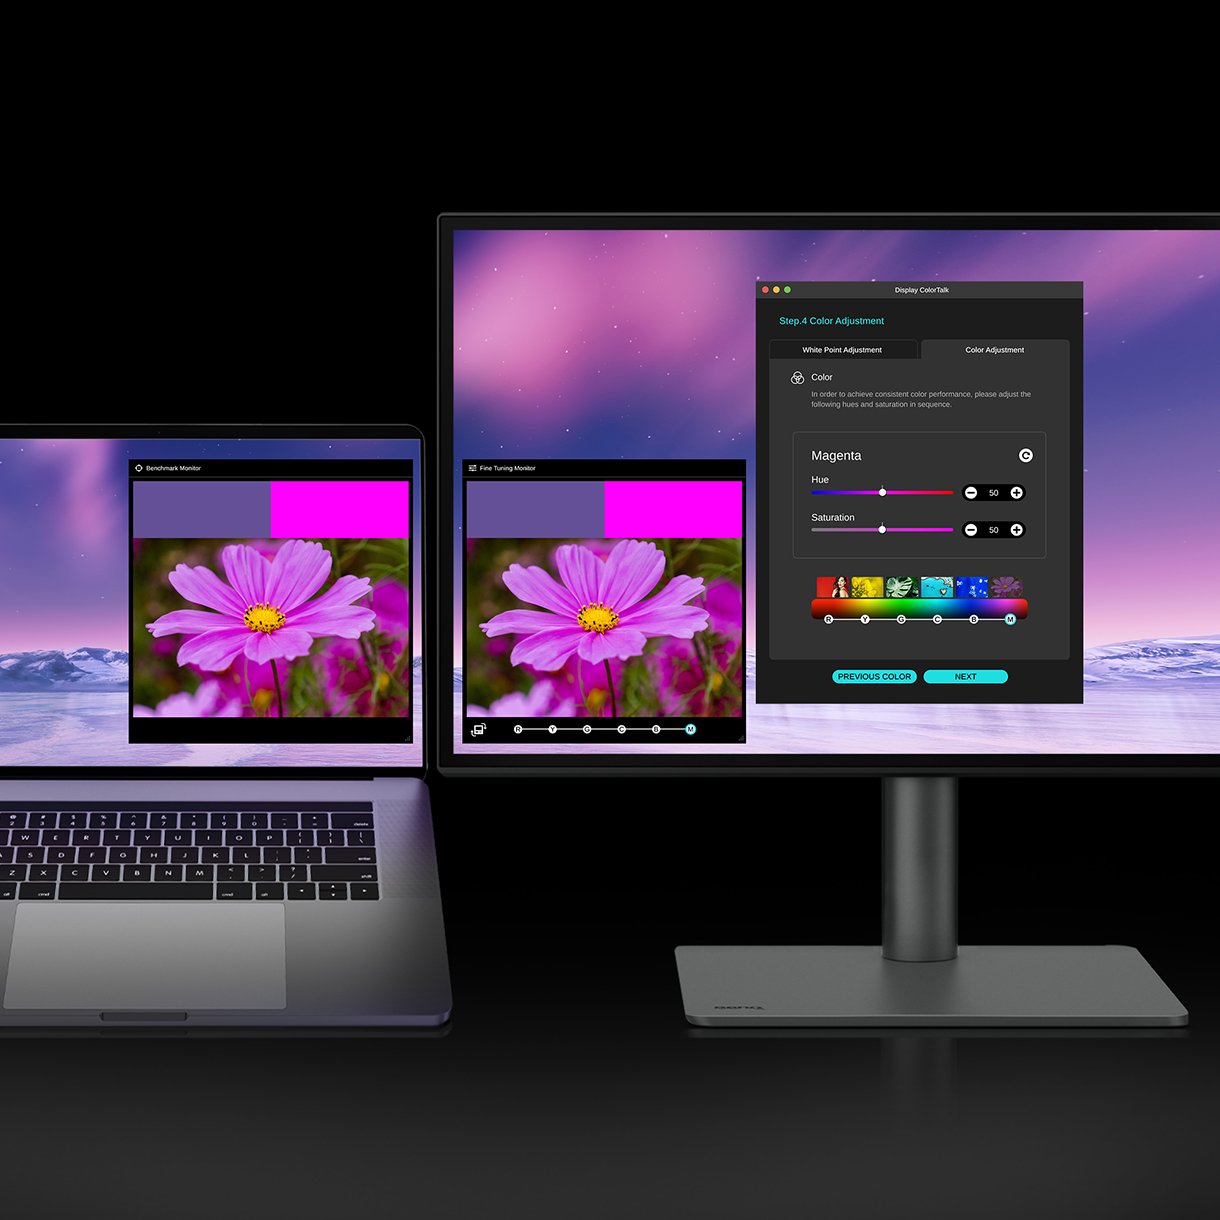 Pomocí softwaru BenQ Display ColorTalk můžete v několika jednoduchých krocích duplikovat barvy z hlavního monitoru a použít je na druhý monitor. 